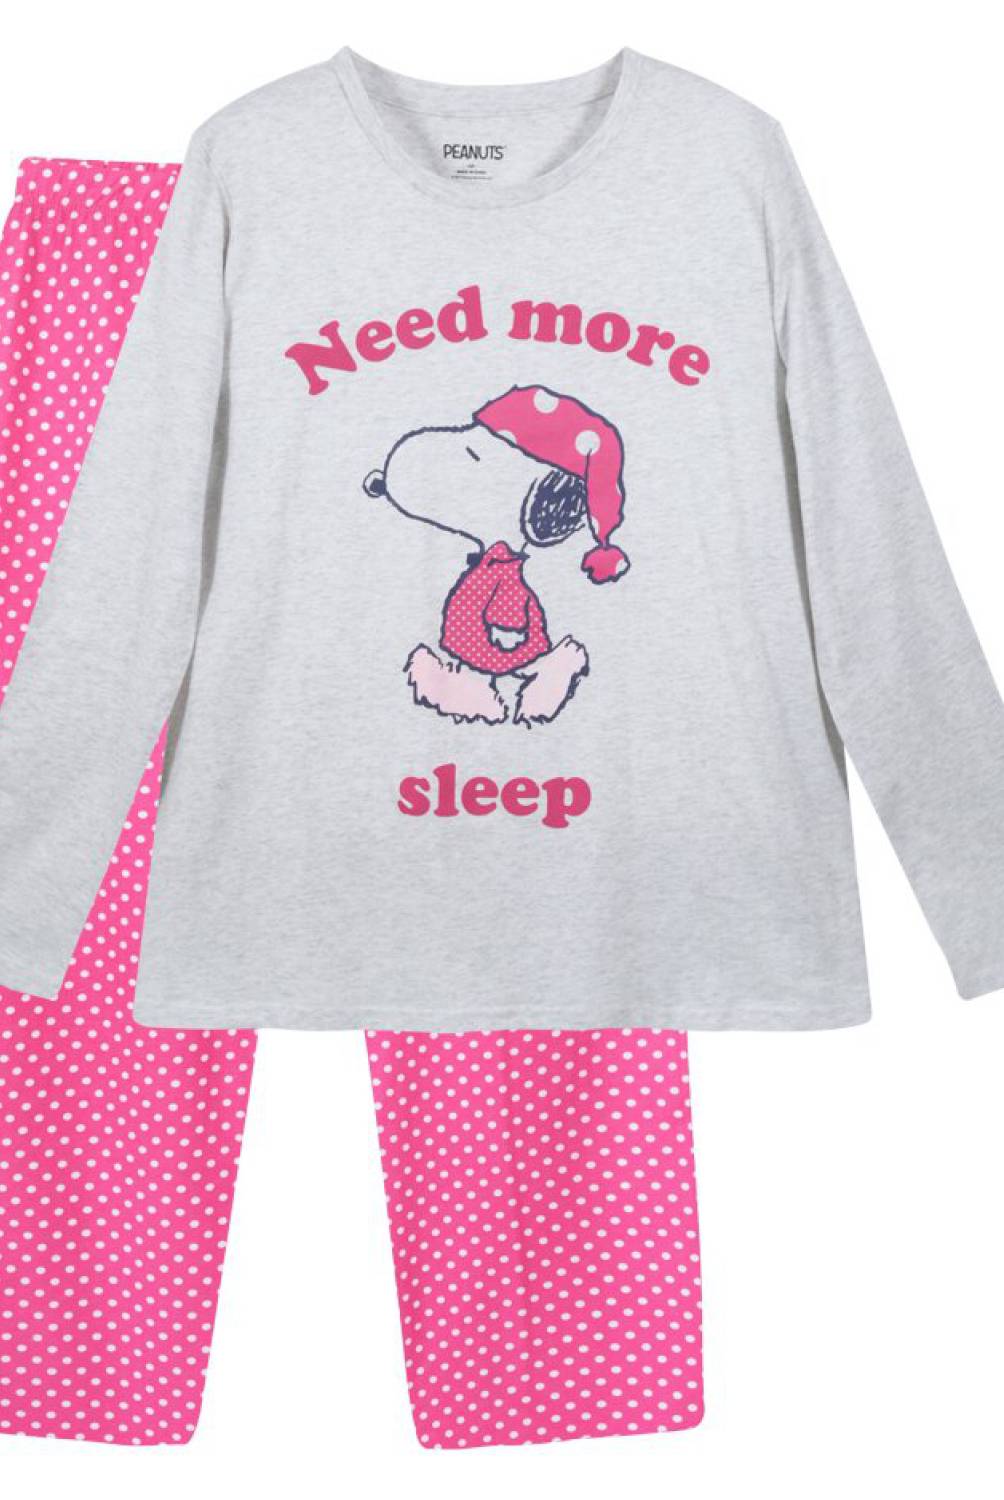 SNOOPY - Pijama Ll Mujer Sleep Gris Snoopy